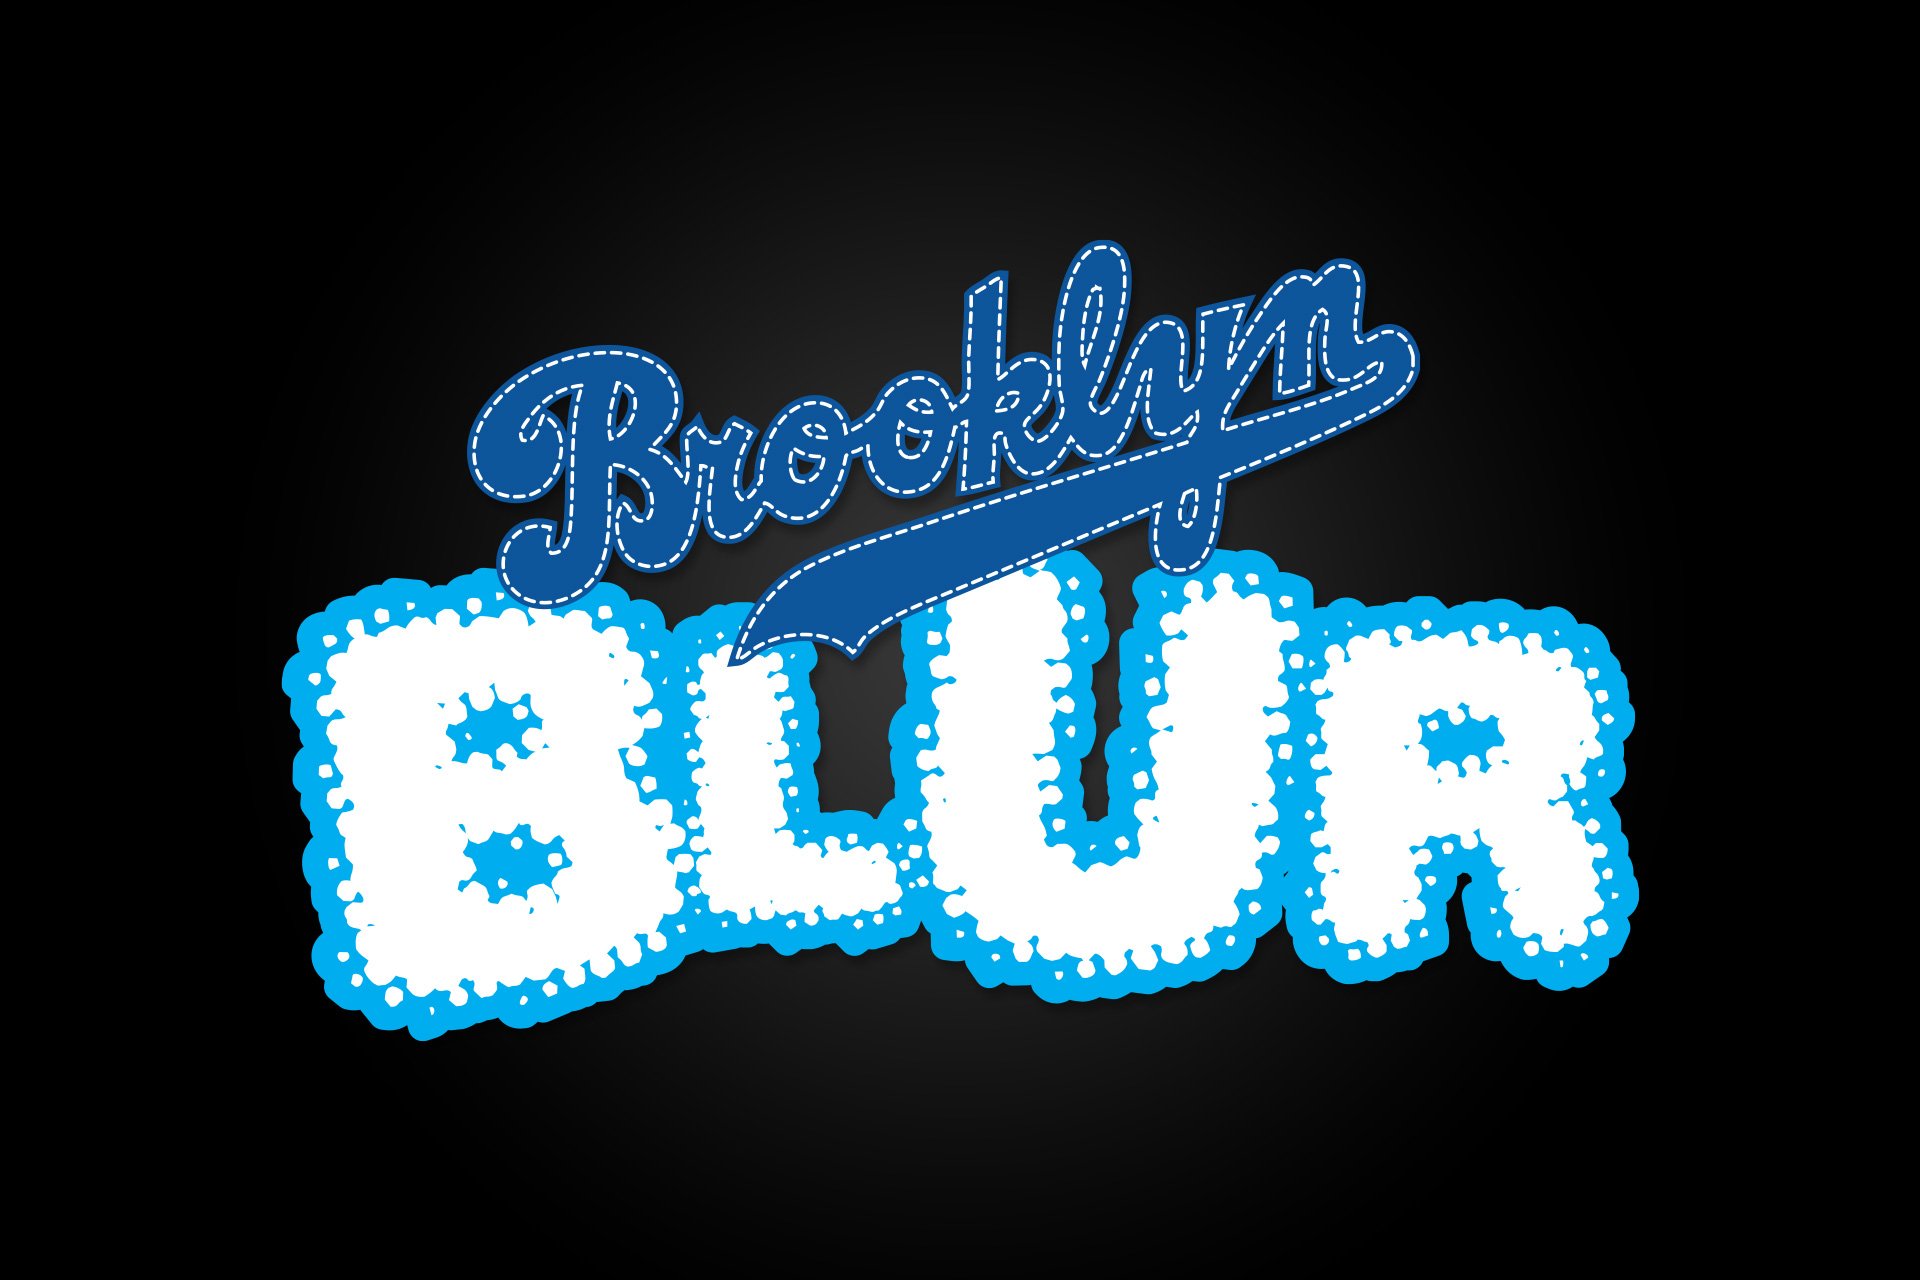 Brooklyn Blur